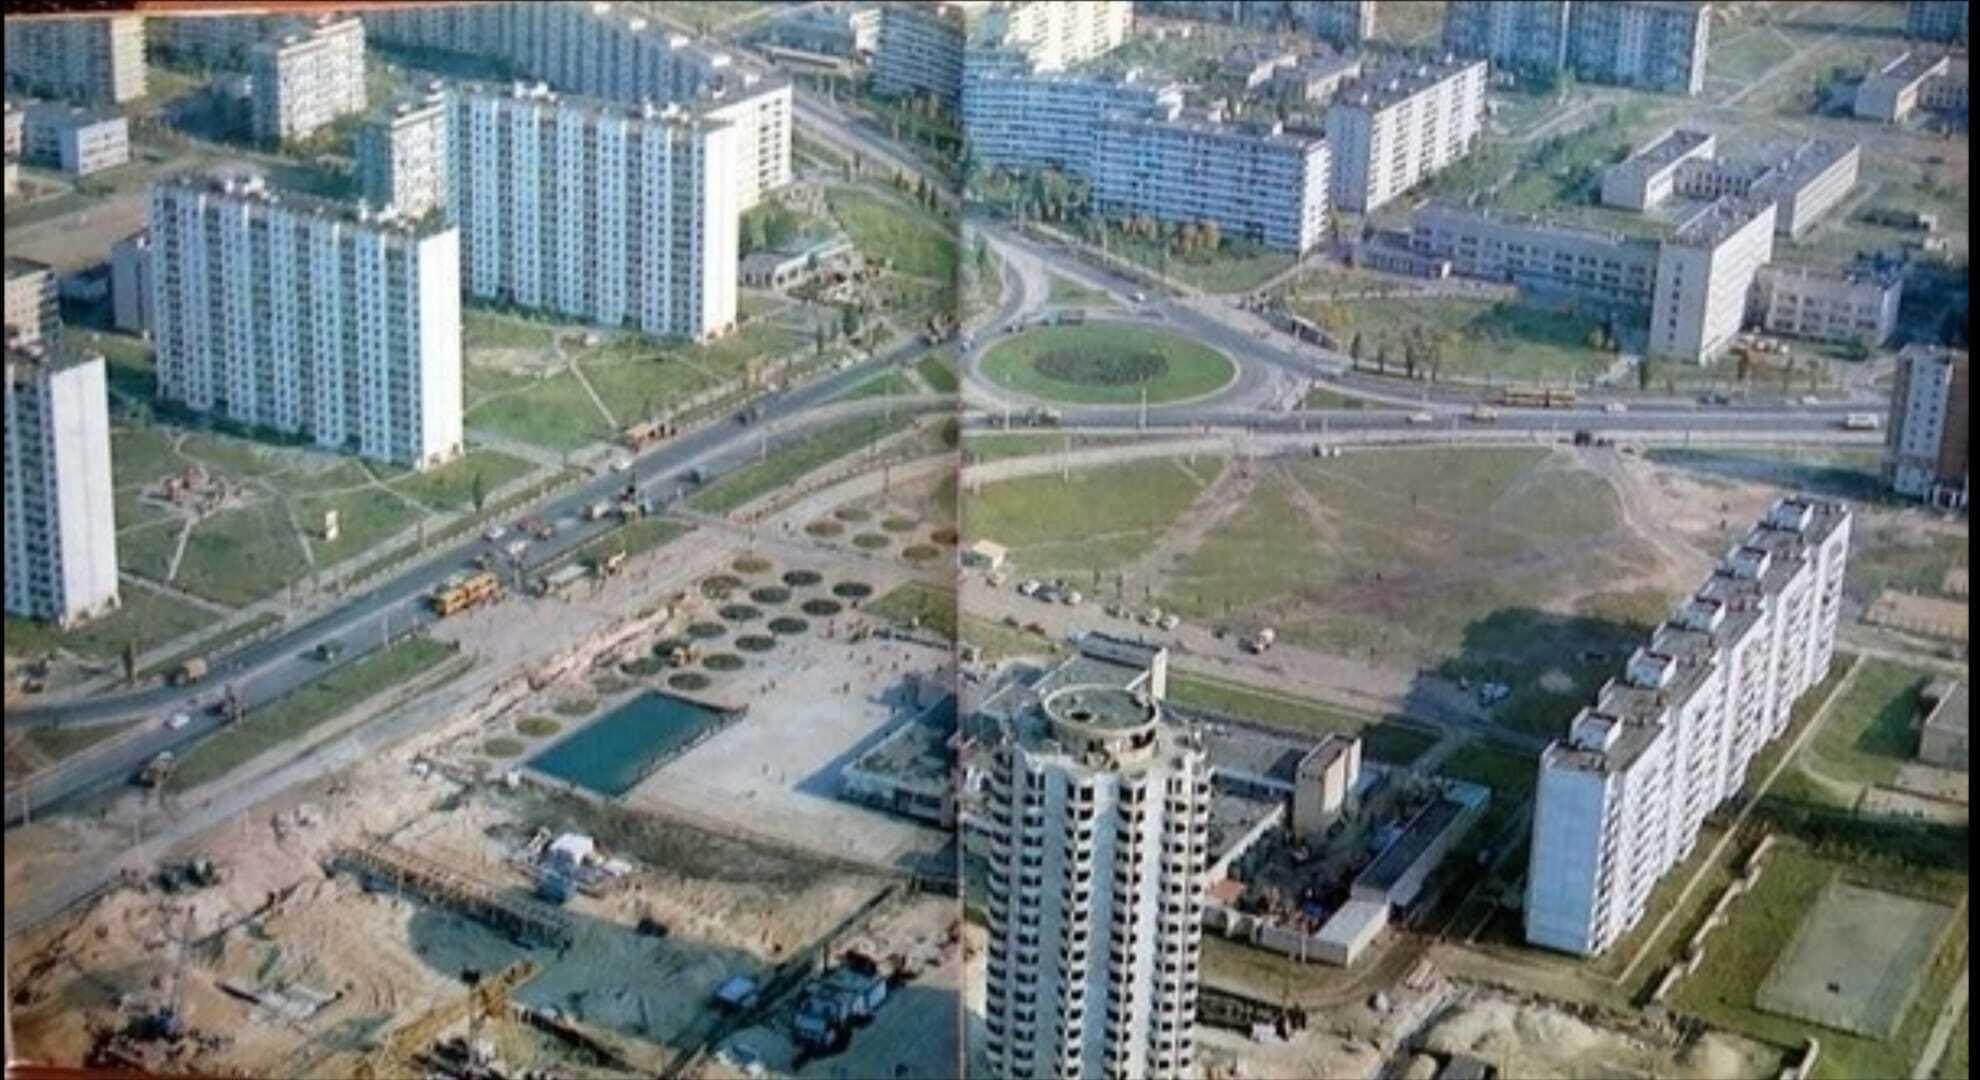 Много песка и без ТРЦ: в сети опубликовали уникальные фото Оболони 1970-1980-х годов